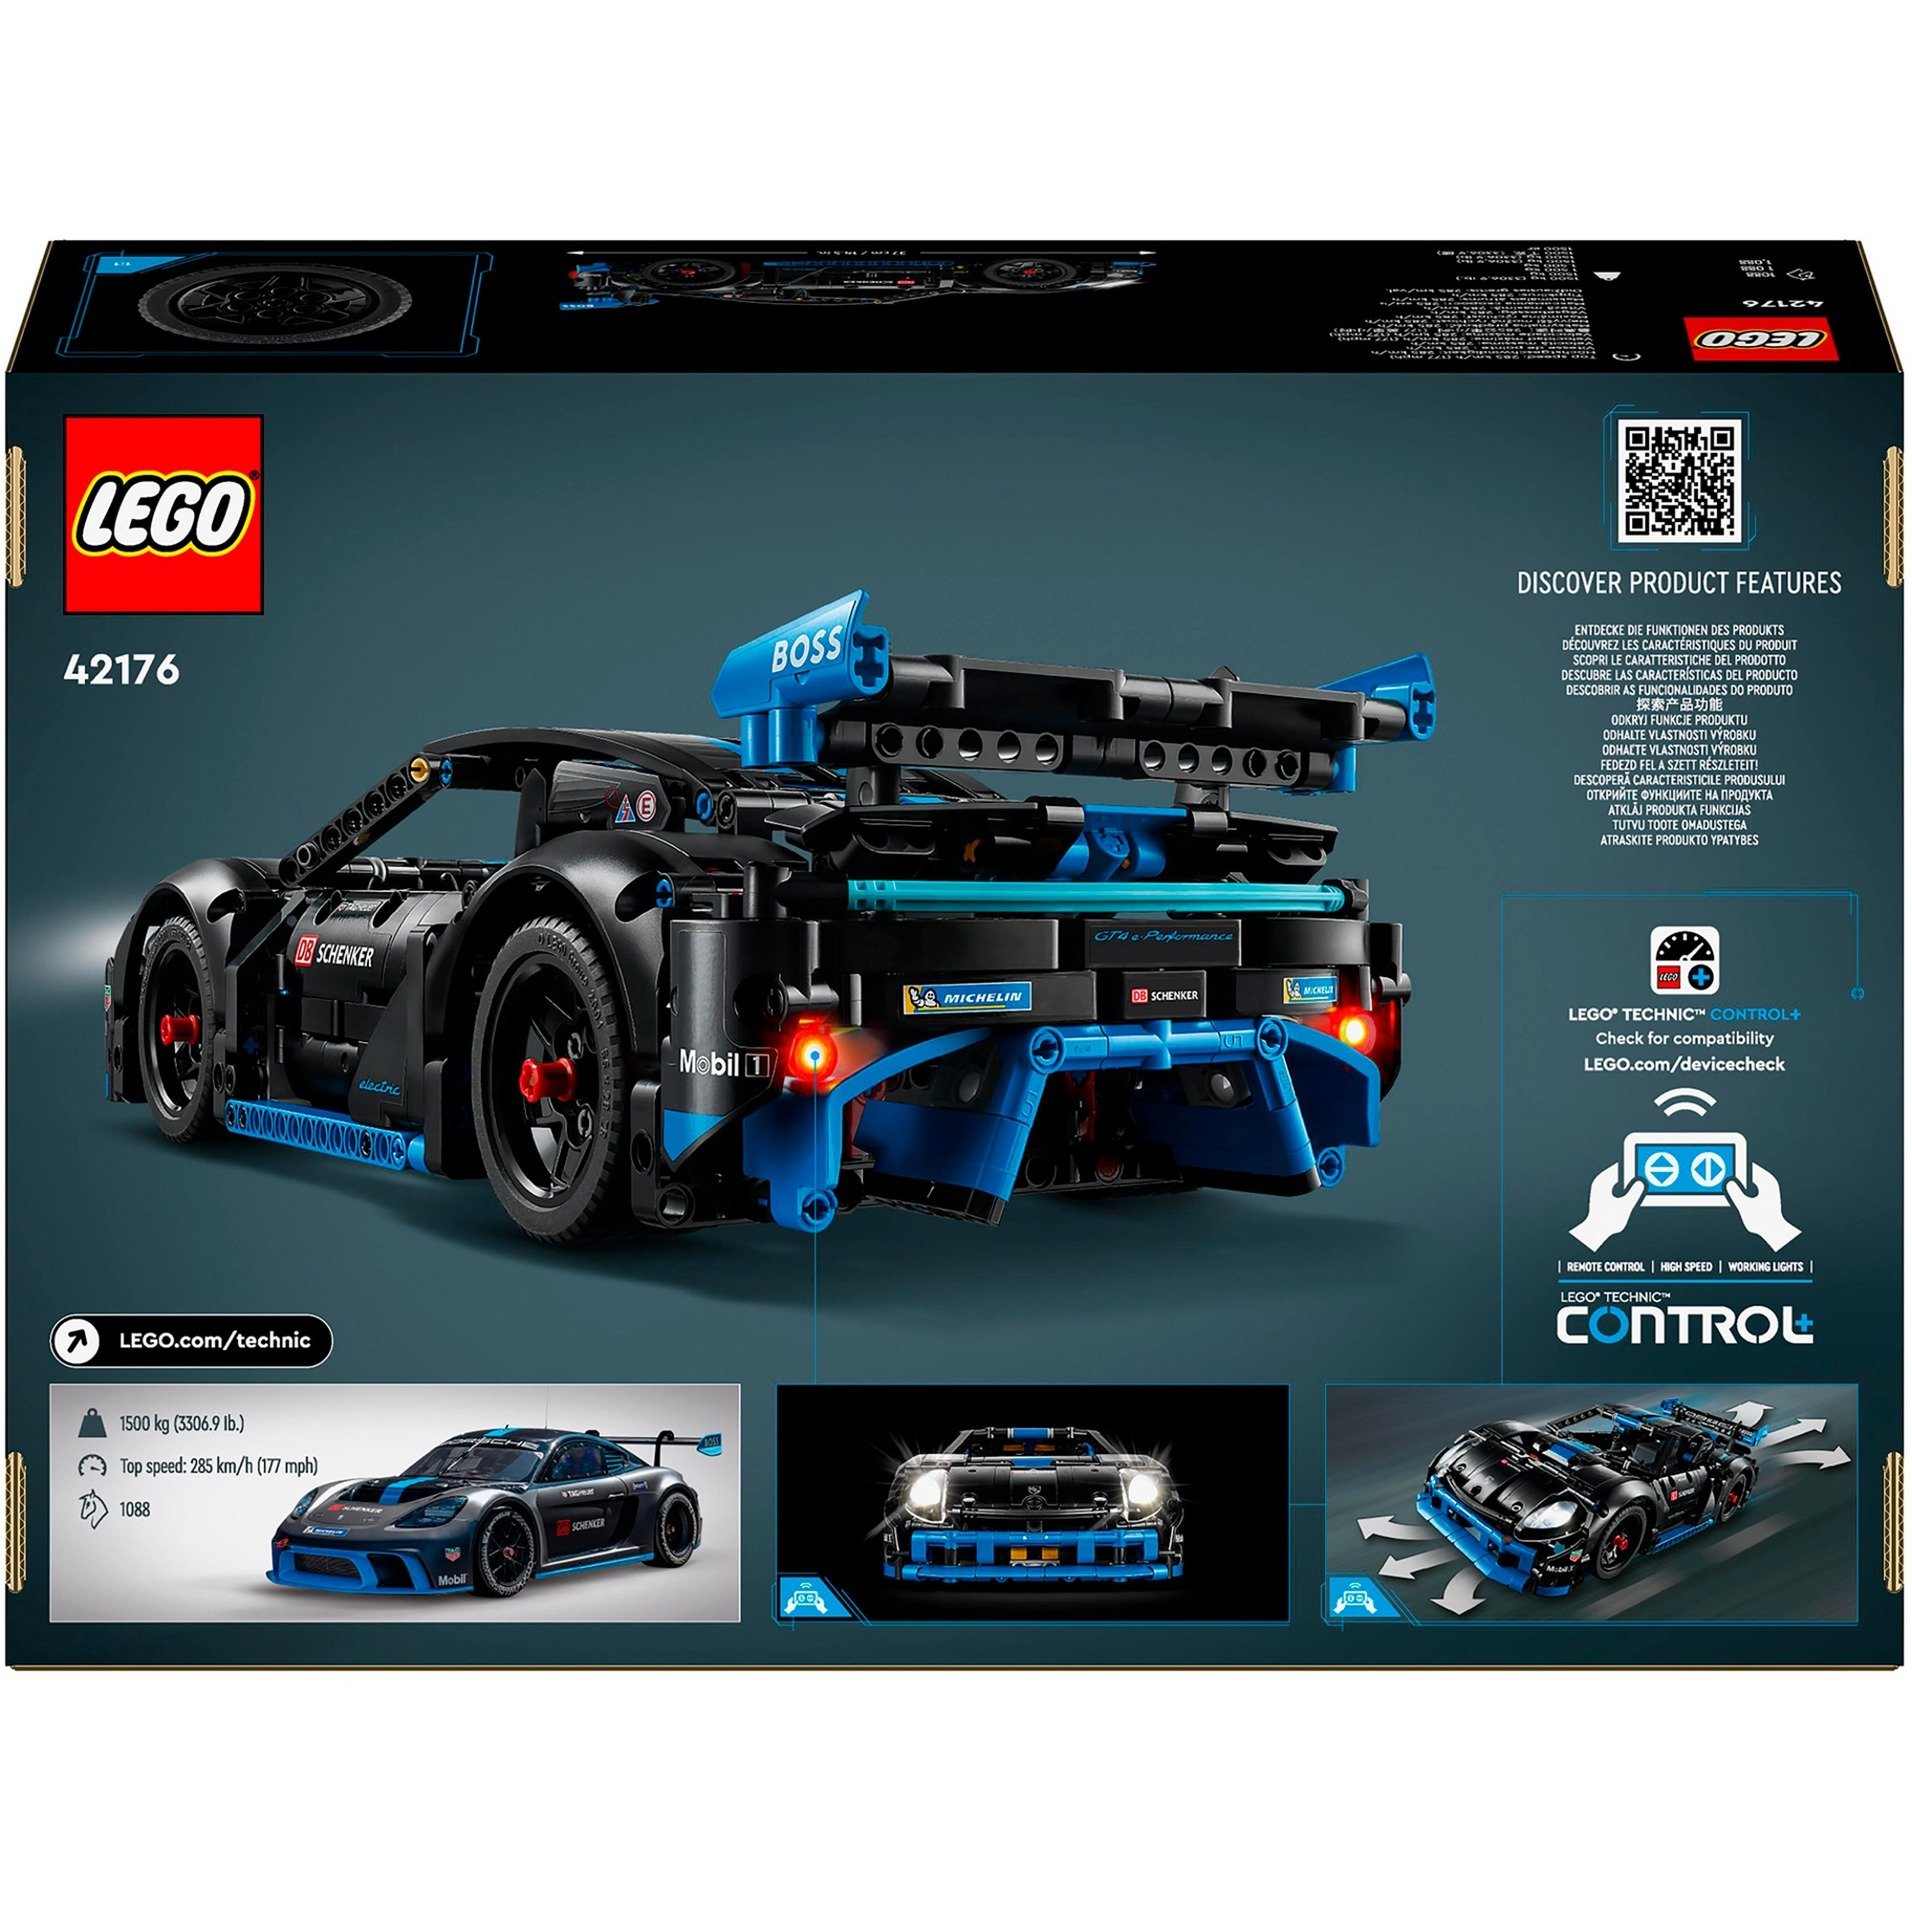 LEGO_42176_Technic_Porsche_GT4_e_Perform